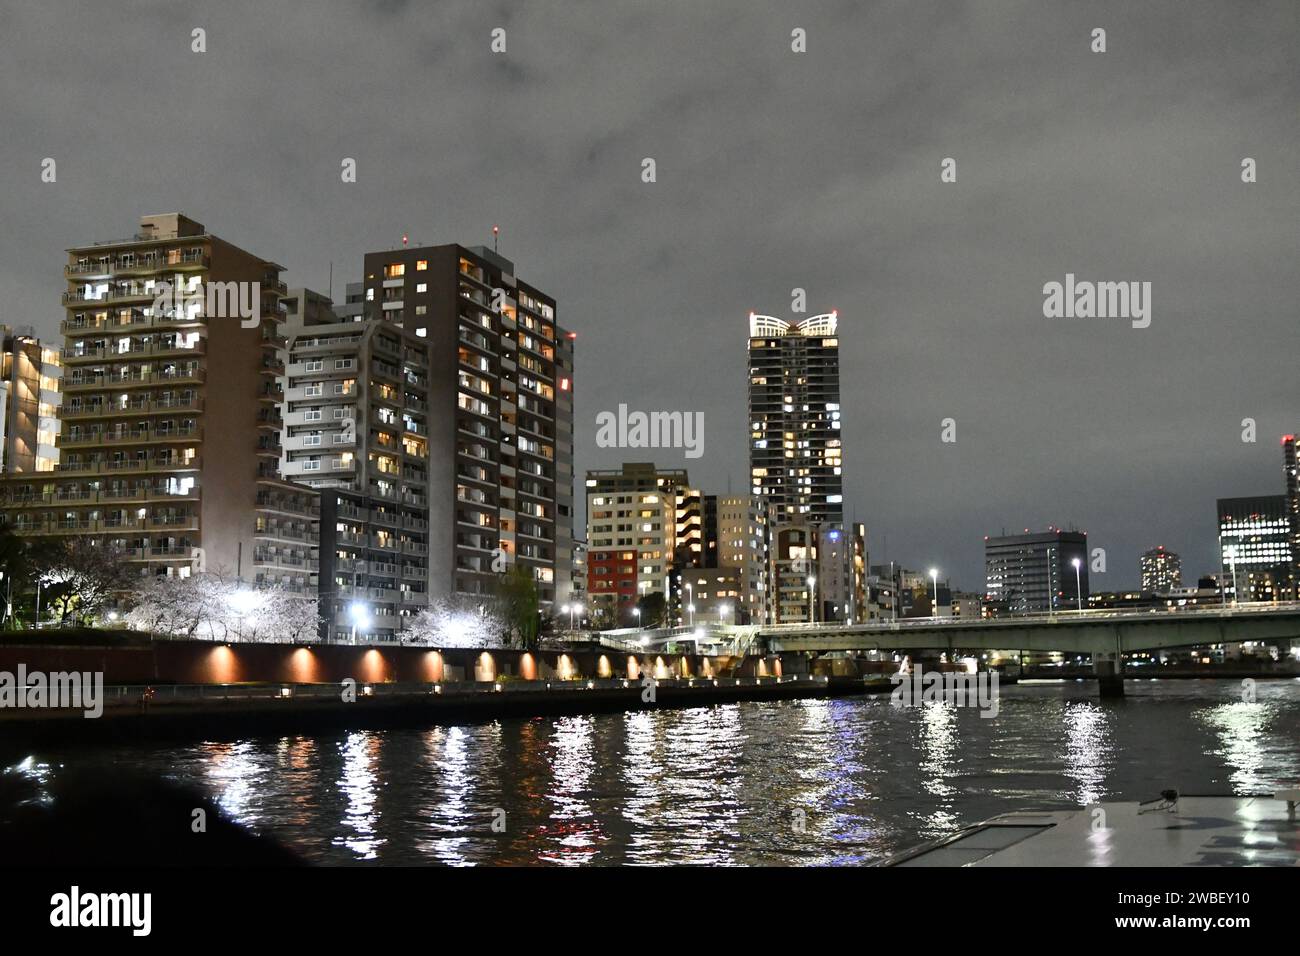 Ein atemberaubender Blick aus der Luft auf eine geschäftige Stadt bei Nacht, mit beleuchteten Gebäuden am Fluss, die eine lebhafte Atmosphäre schaffen Stockfoto